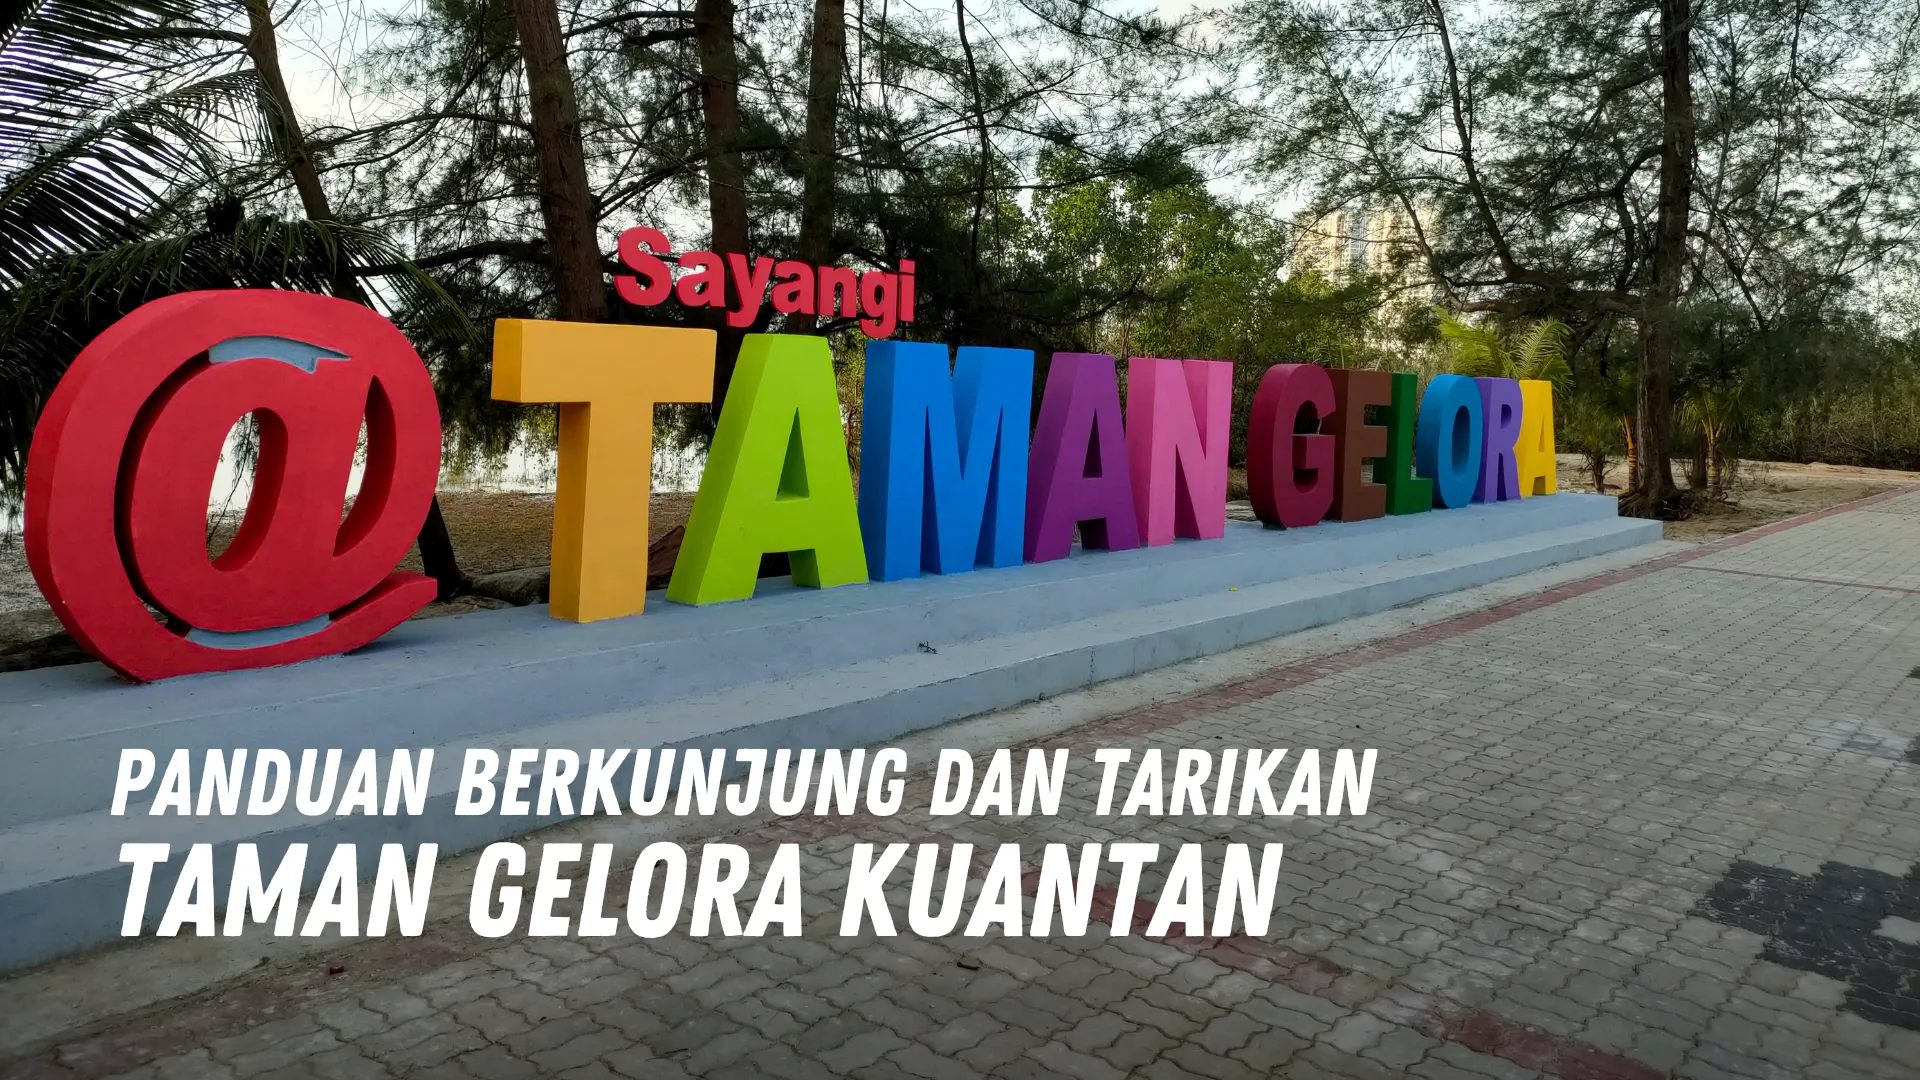 Review Taman Gelora Kuantan Malaysia